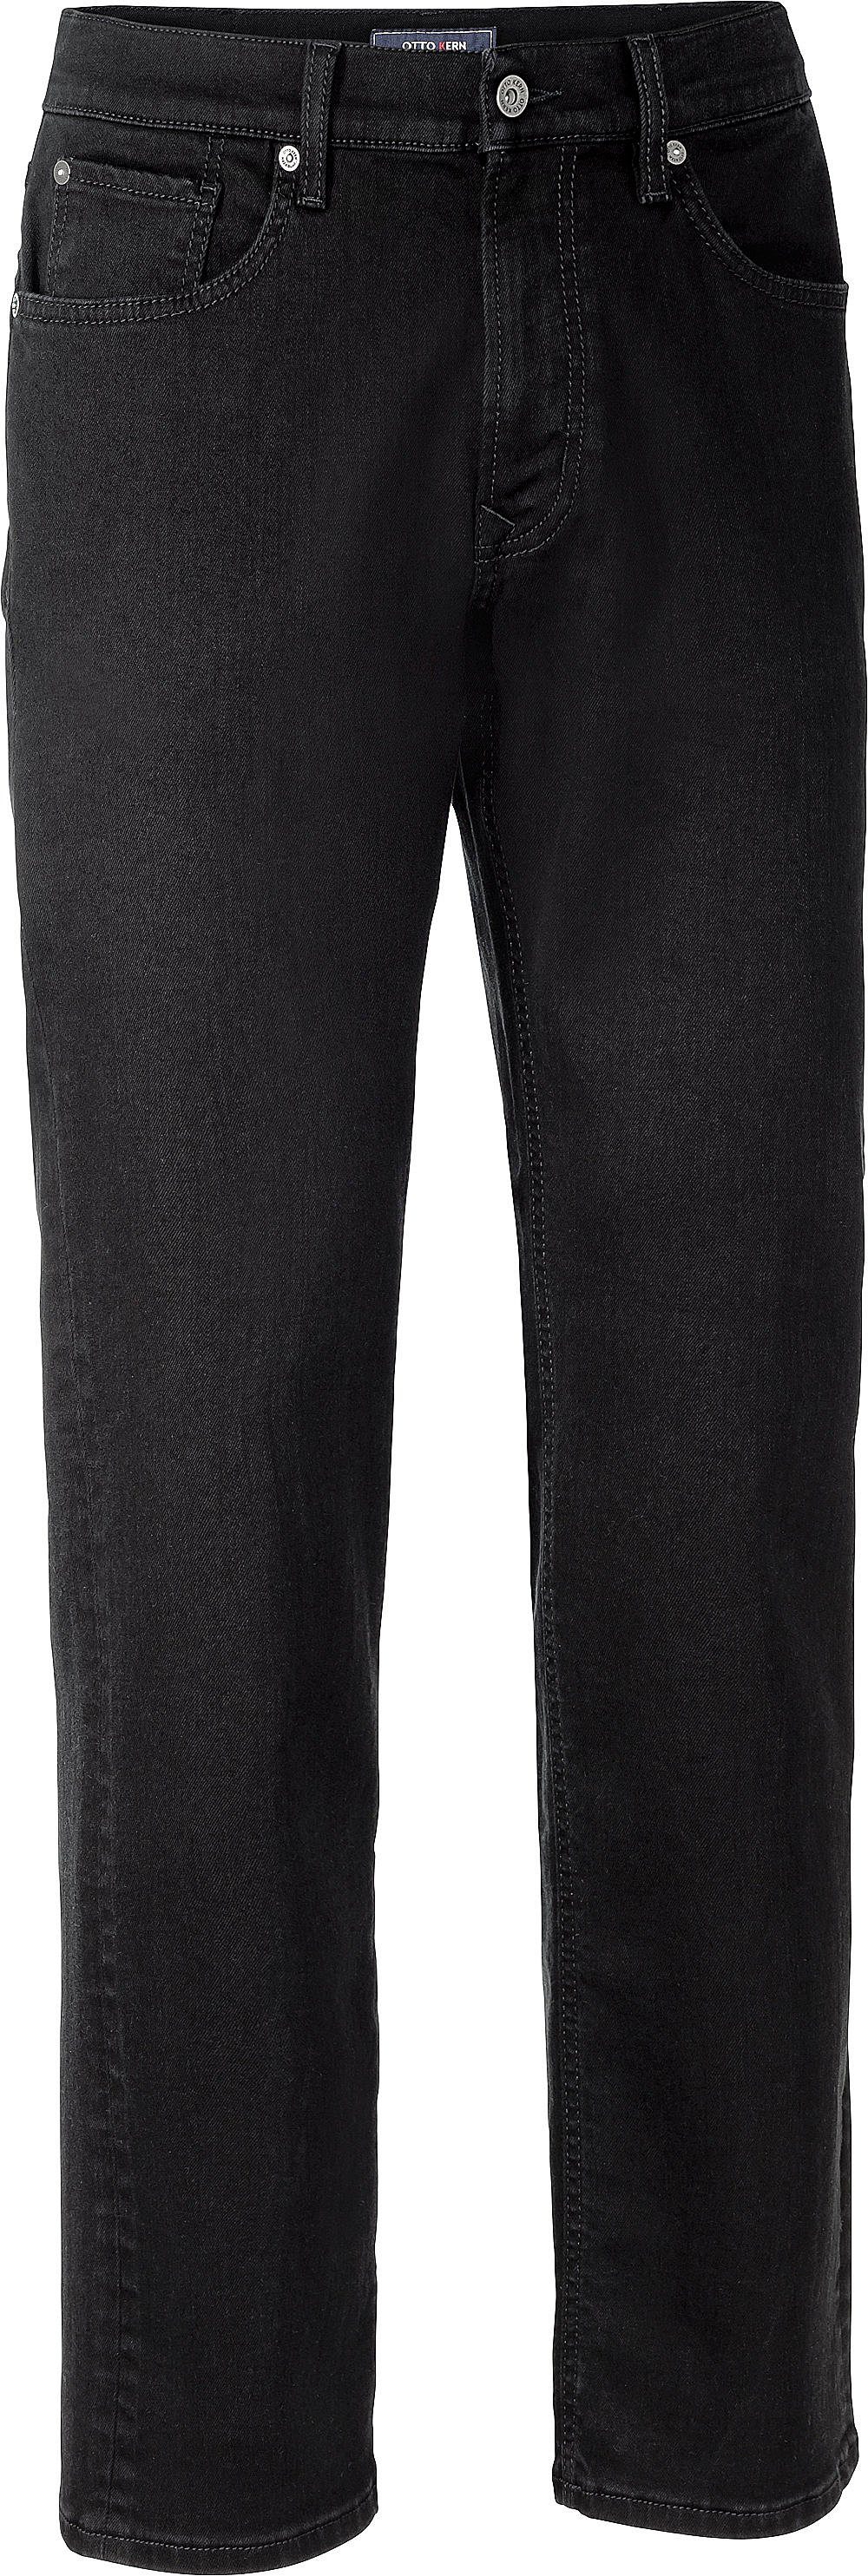 Otto Kern Kern Stretch-Jeans perfekter mit schwarz Sitz Stretch-Anteil